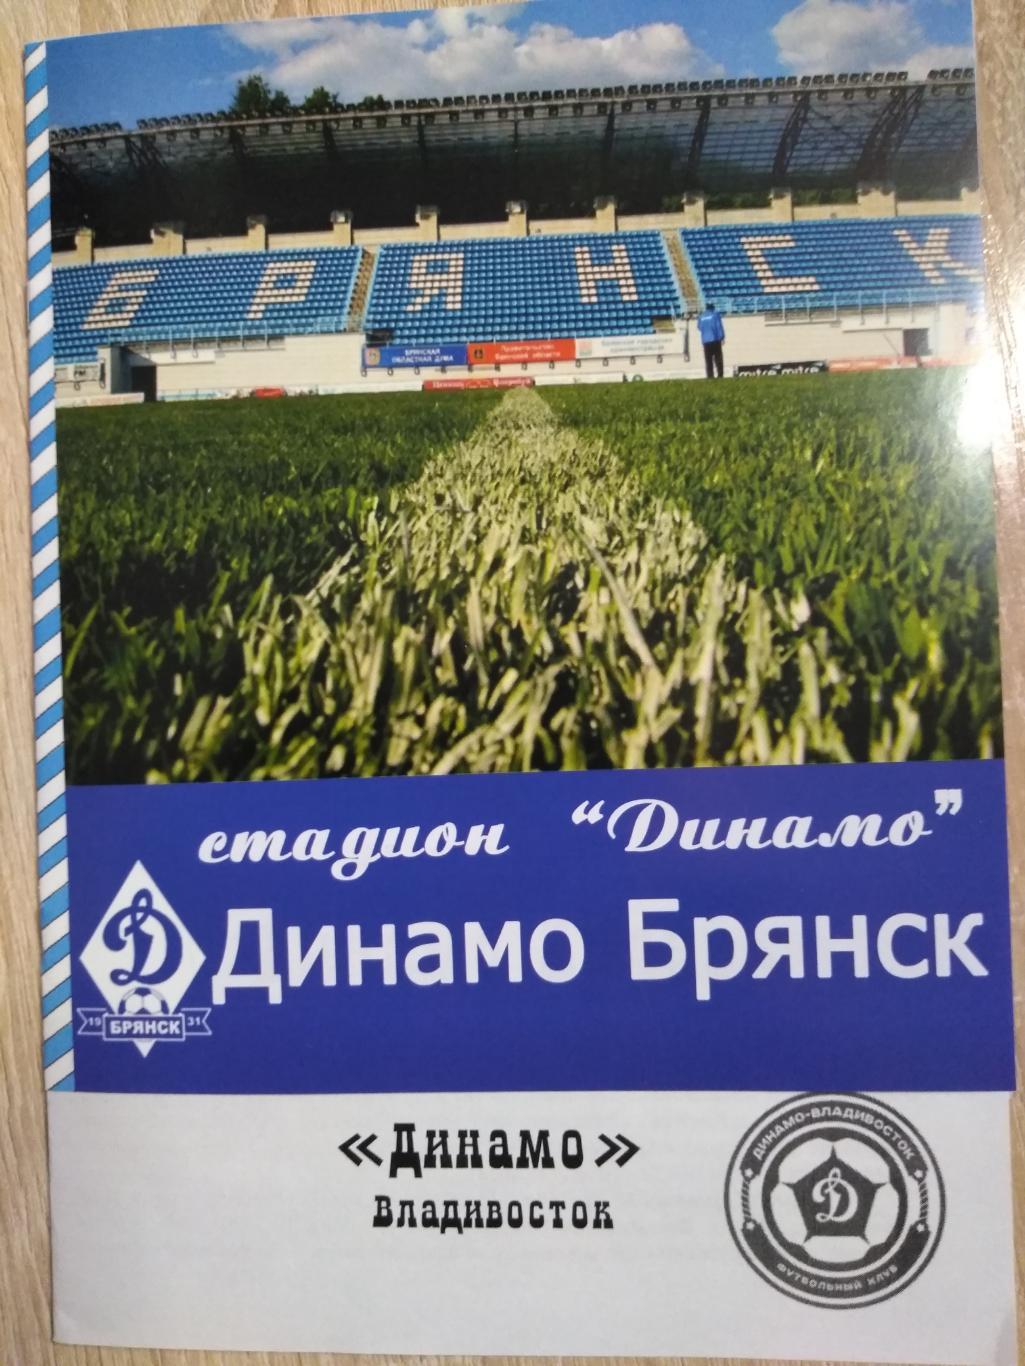 Динамо Брянск - Динамо Владивосток. ФНЛ-2 2021/22. 21.08.2021г.